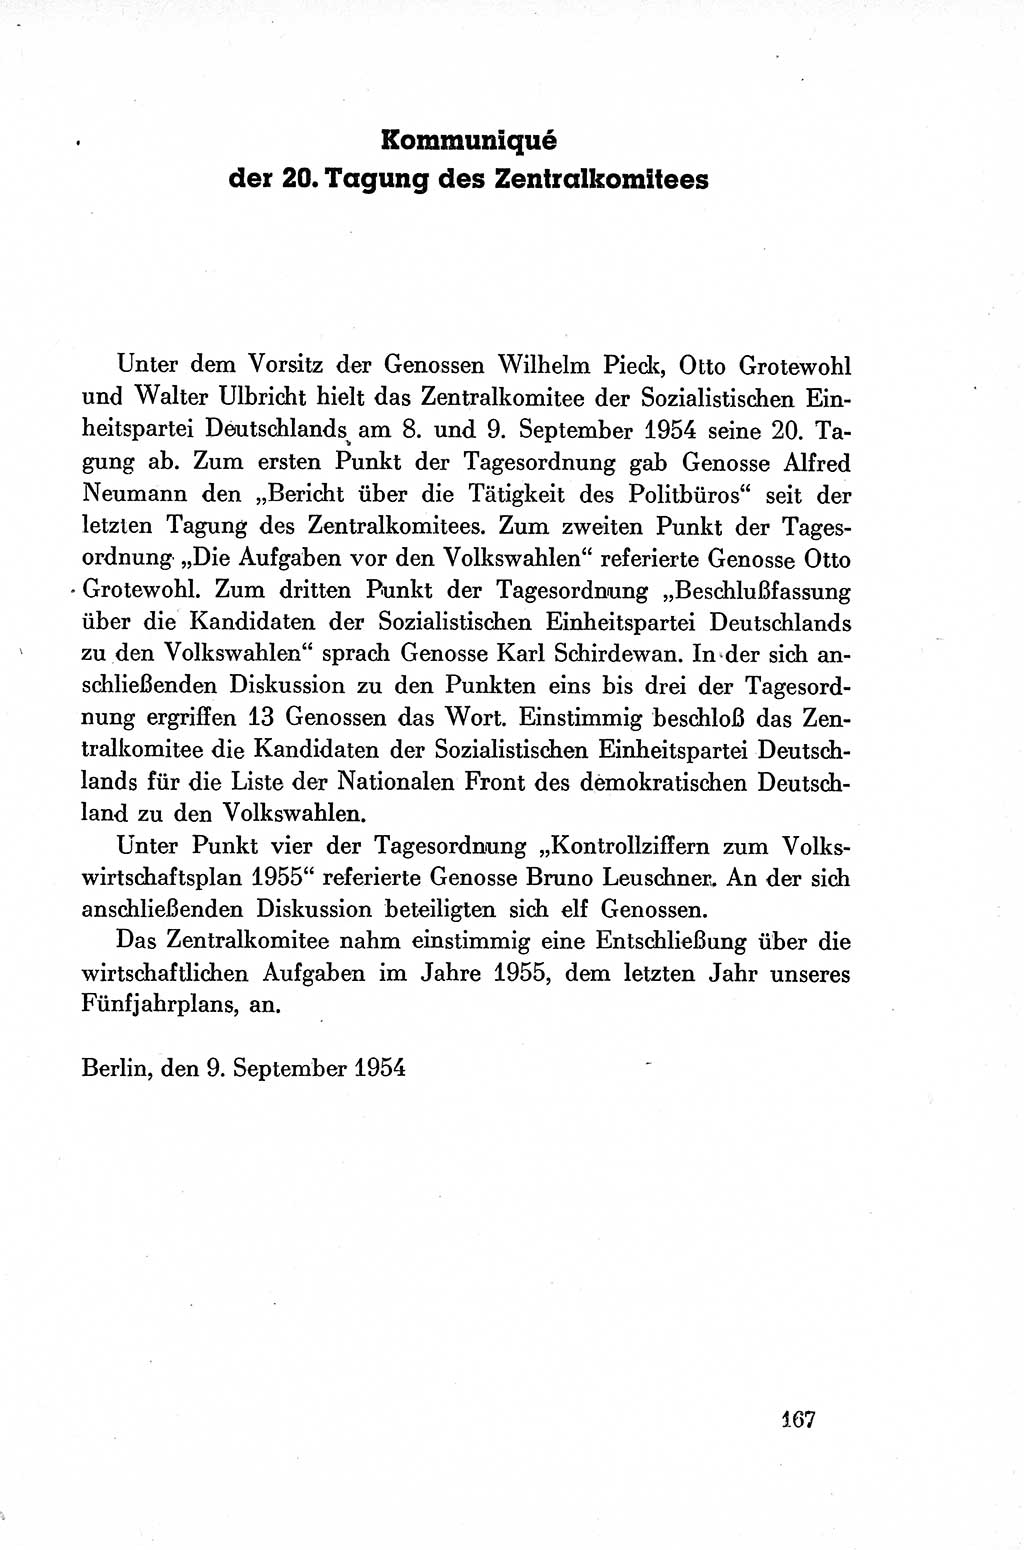 Dokumente der Sozialistischen Einheitspartei Deutschlands (SED) [Deutsche Demokratische Republik (DDR)] 1954-1955, Seite 167 (Dok. SED DDR 1954-1955, S. 167)